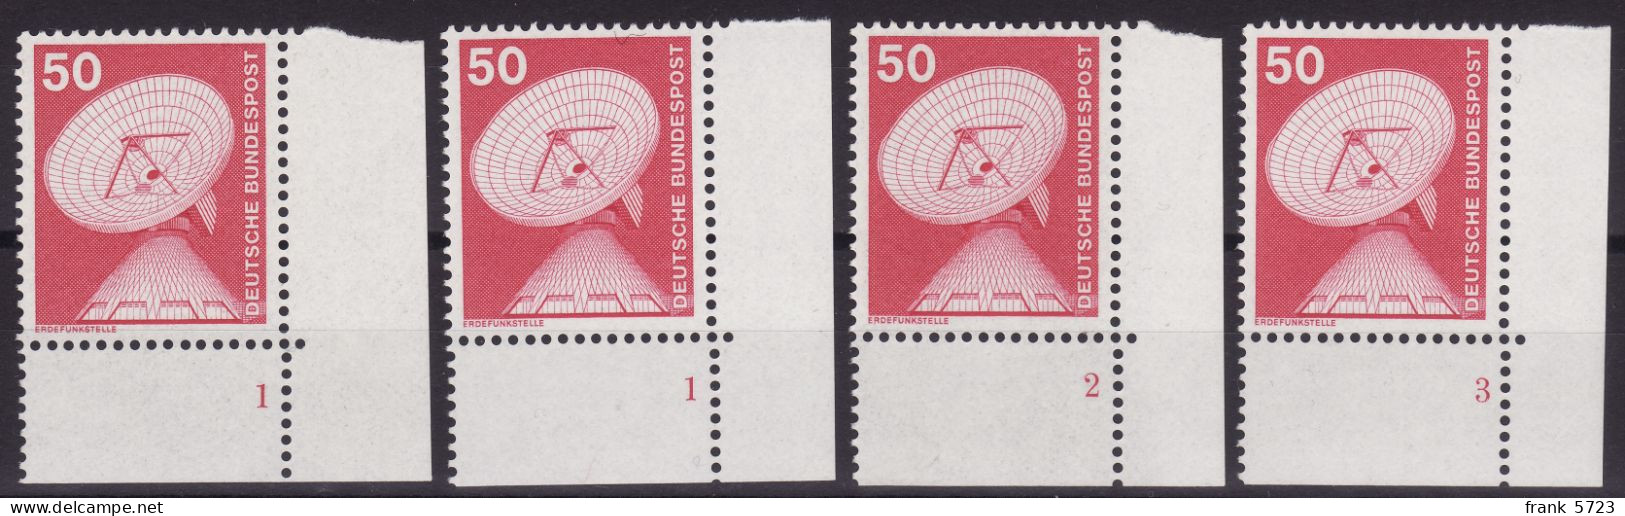 Bund: MiNr. 851 (Industrie Und Technik 1975) Mit Formnummern 1, 2 Und 3, Postfrisch ** - Nuevos